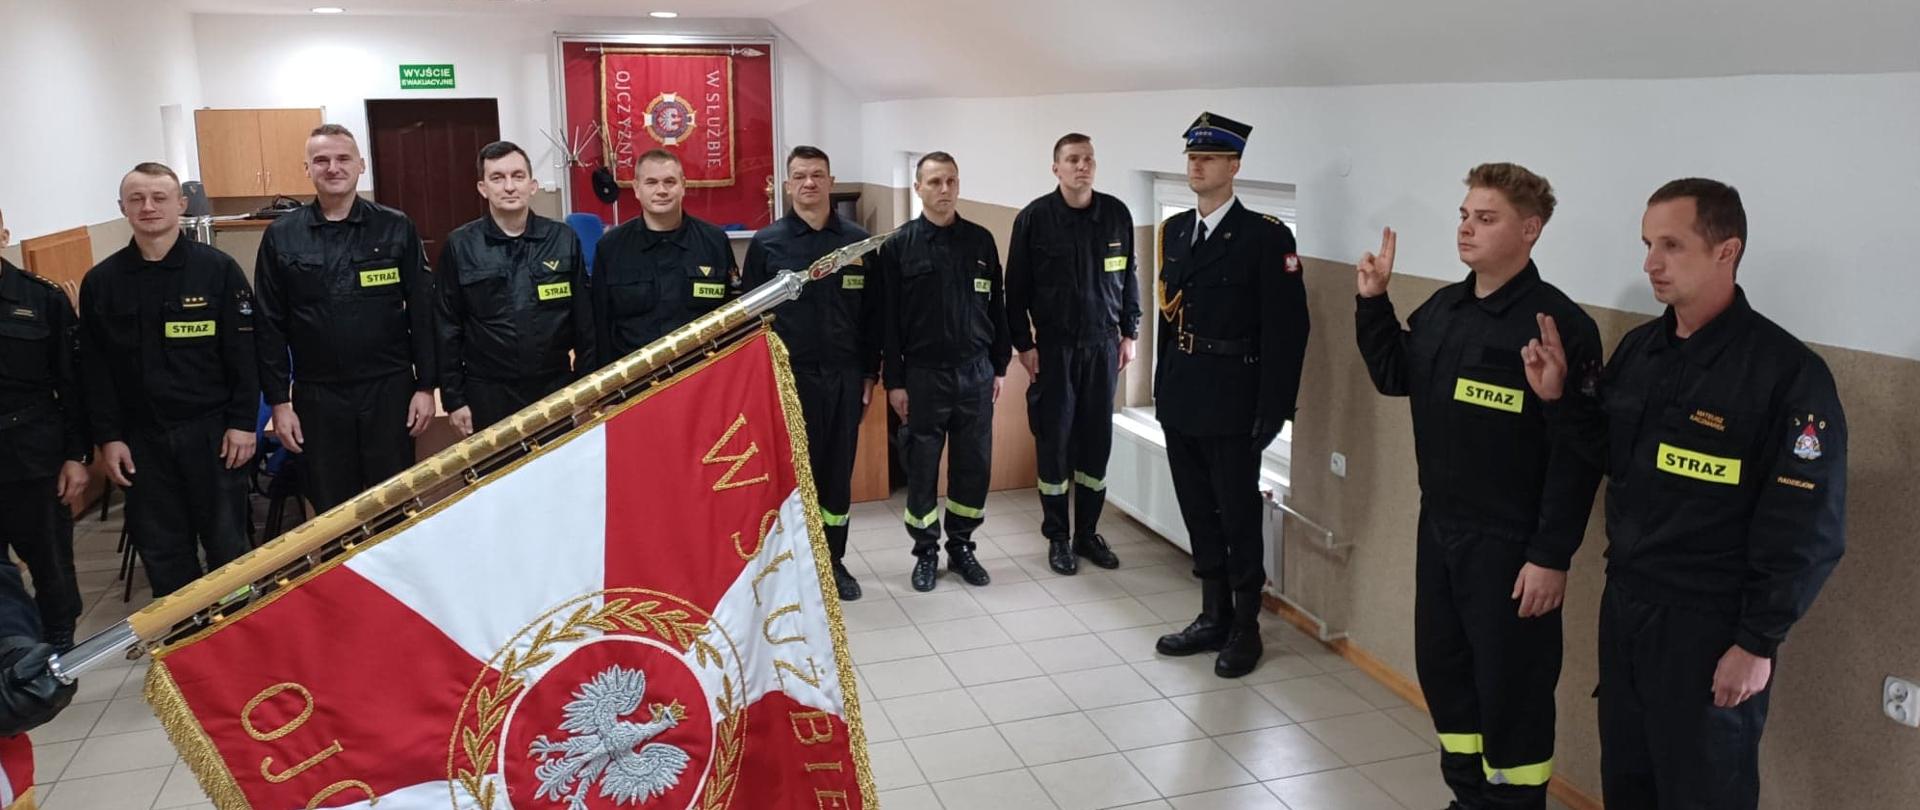 Ślubowanie nowo przyjętych strażaków KP PSP Radziejów. Strażacy składają ślubowanie na sztandar KP PSP Radziejów. W tle stoi pododdział strażaków.